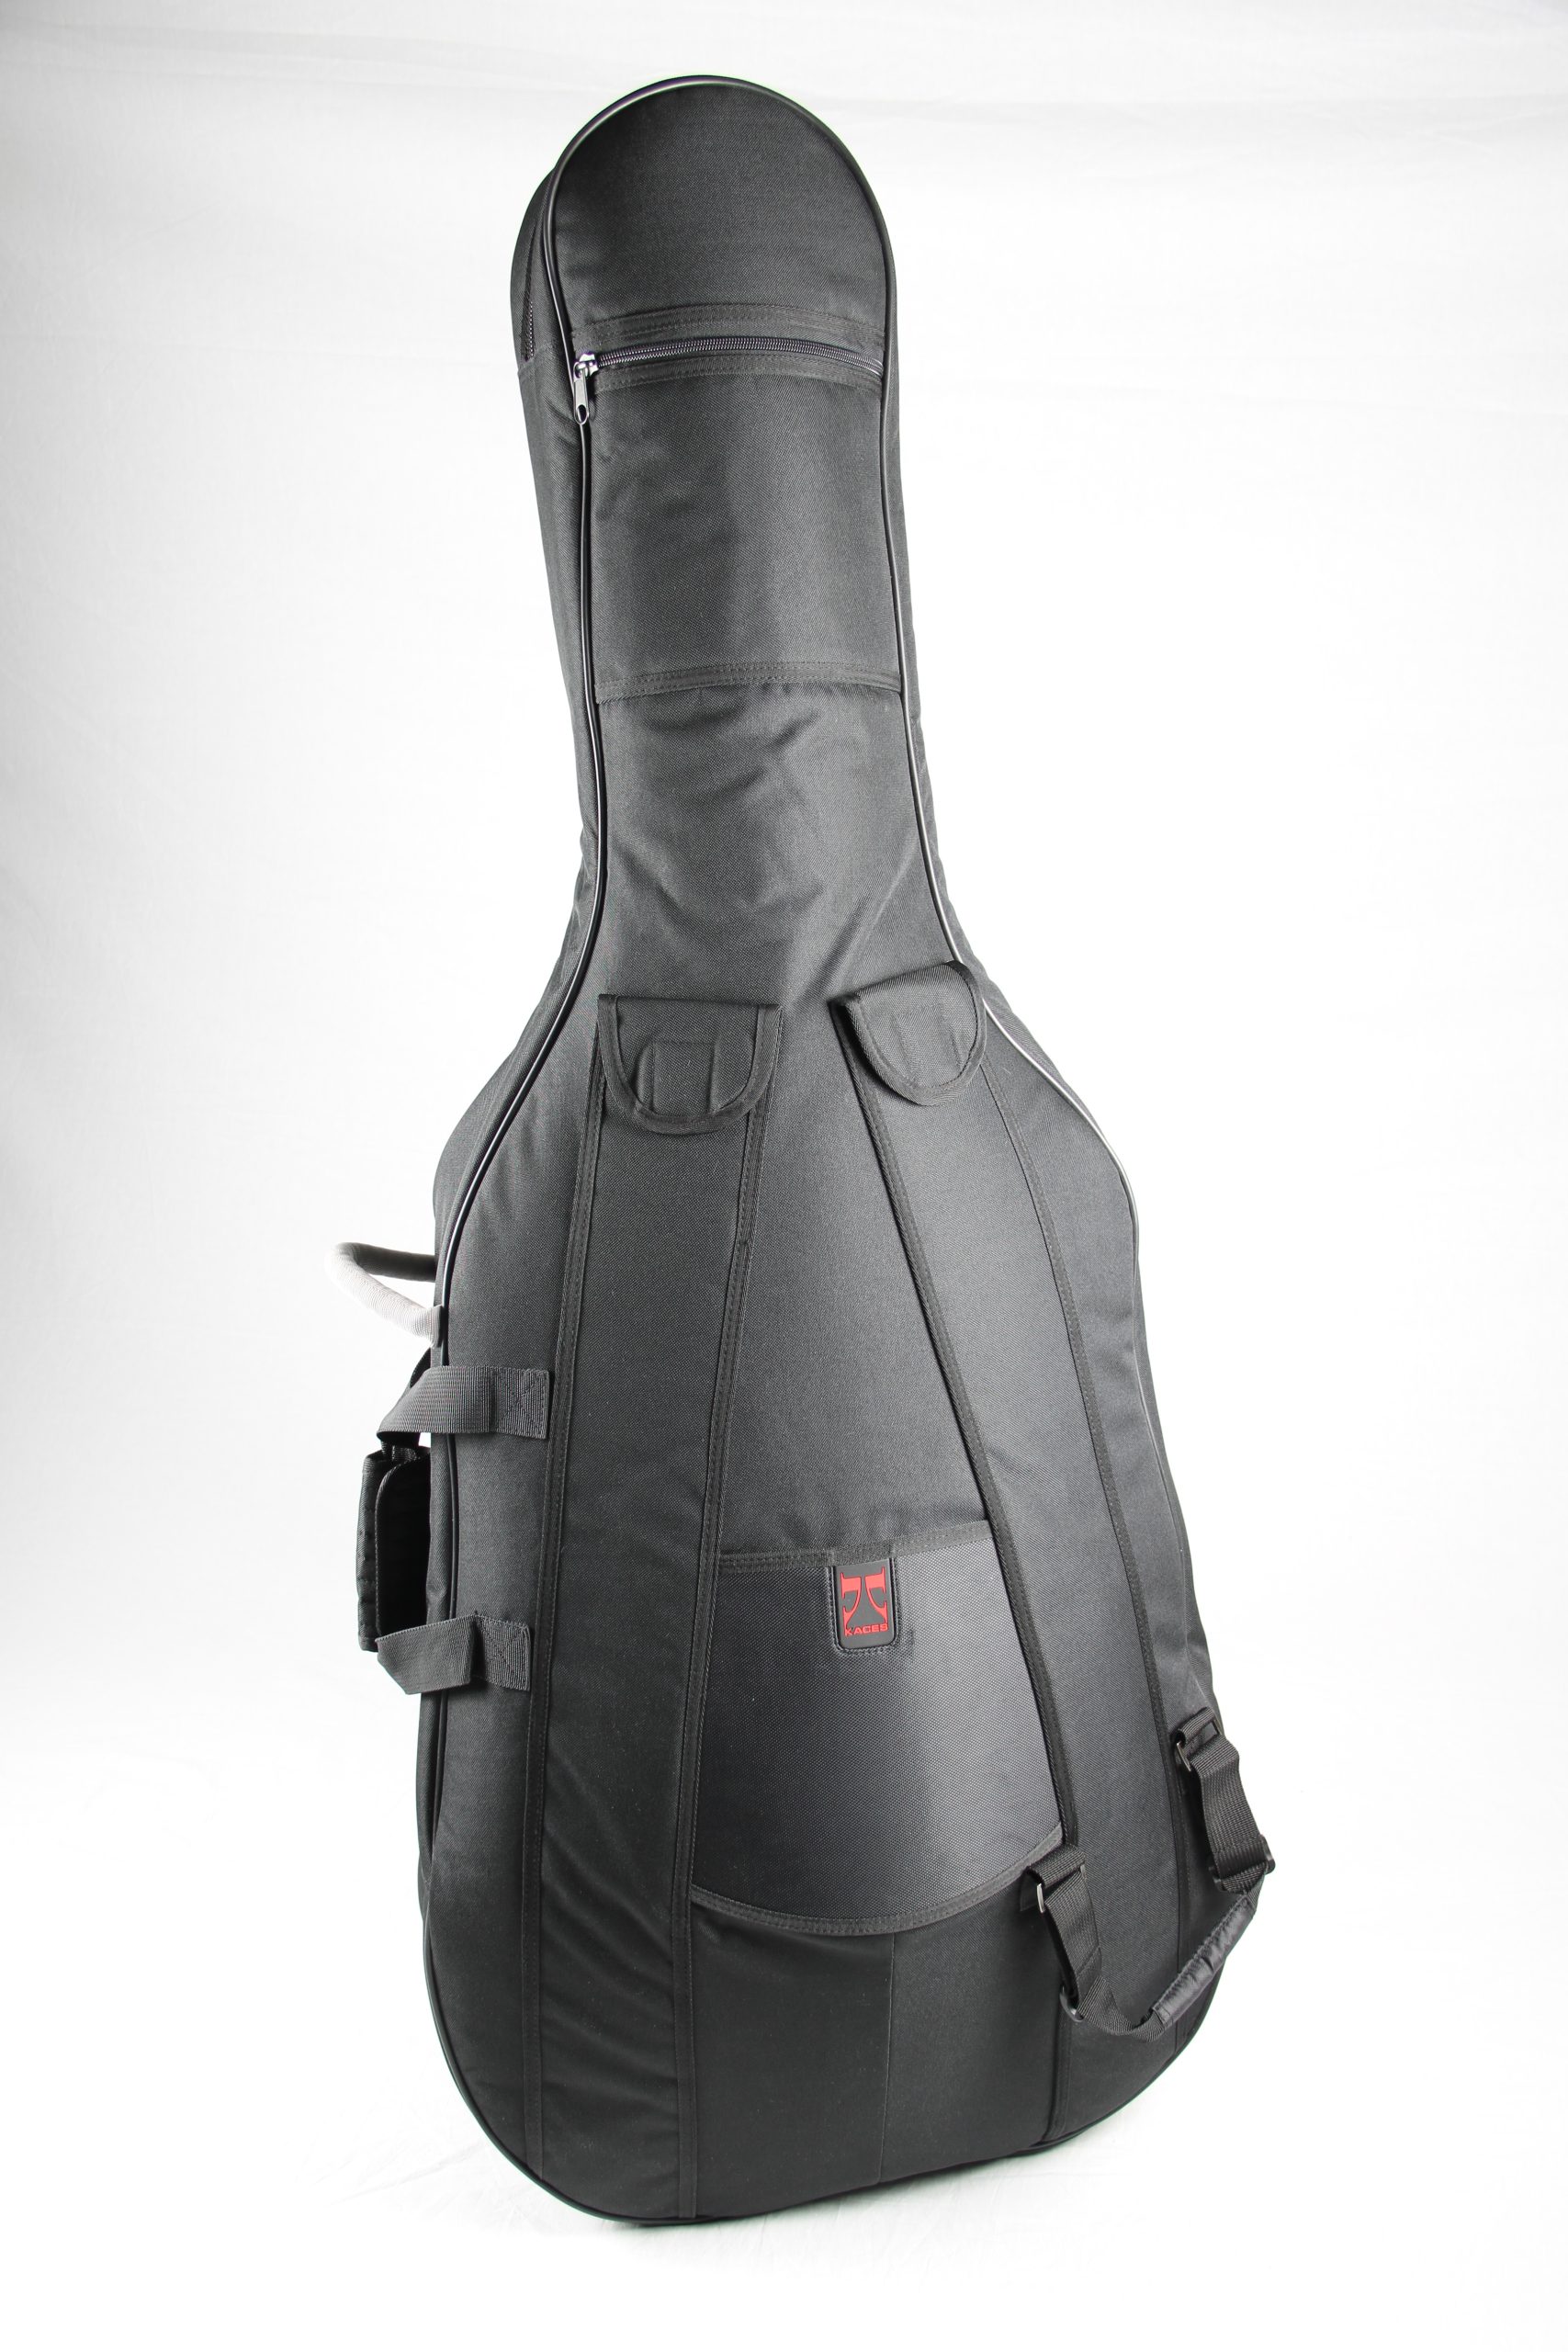 Symphony Series 3/4 size Upright Bass Bag